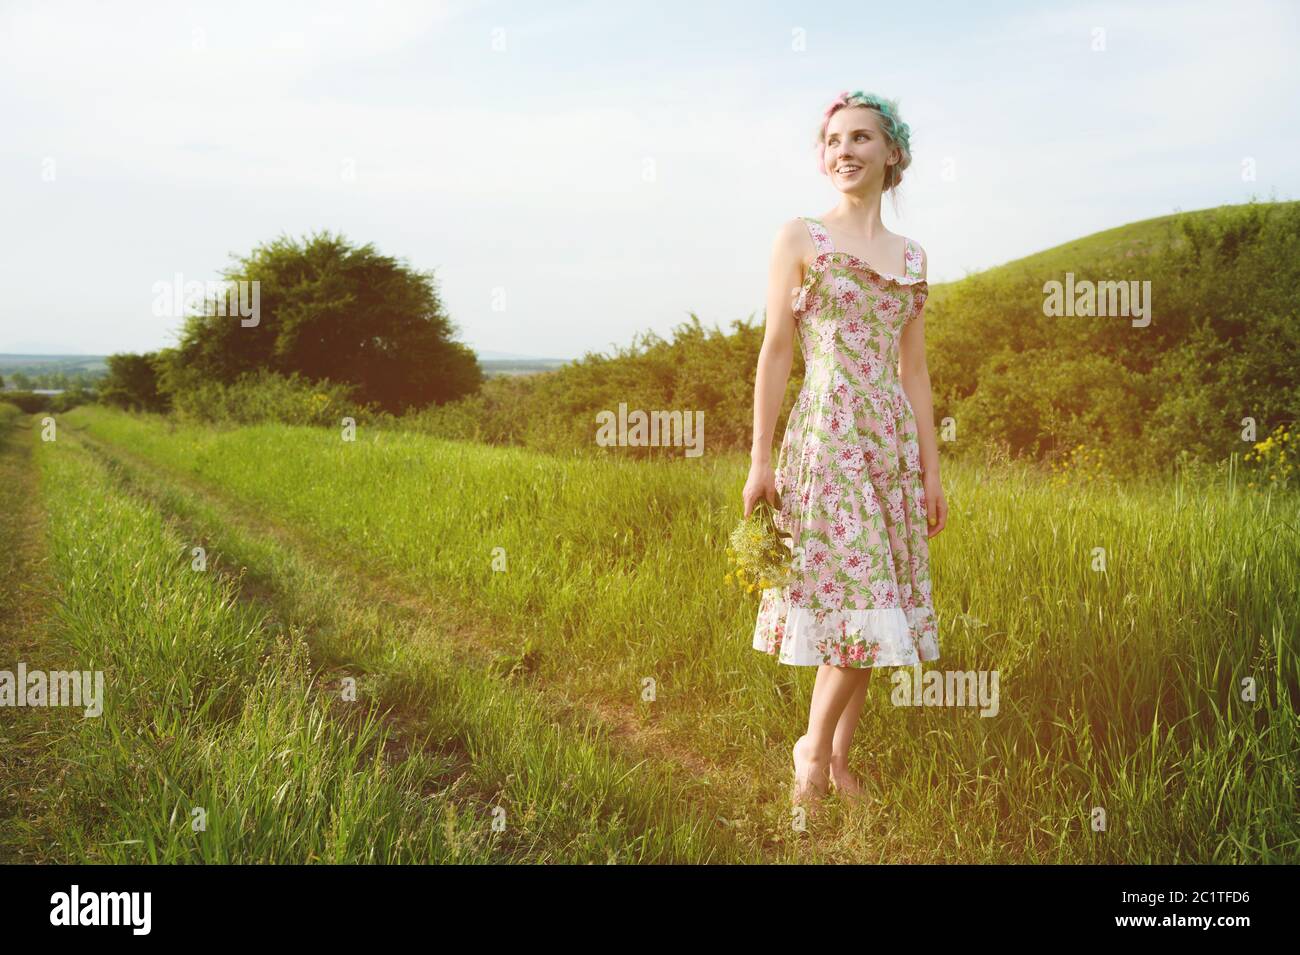 Ситцевое платье песня. Девушка в ситцевом платье. Ситцевое платье для девочки. Девушка в ситцевом платье на природе. Девочка в ситцевом платье на поле.